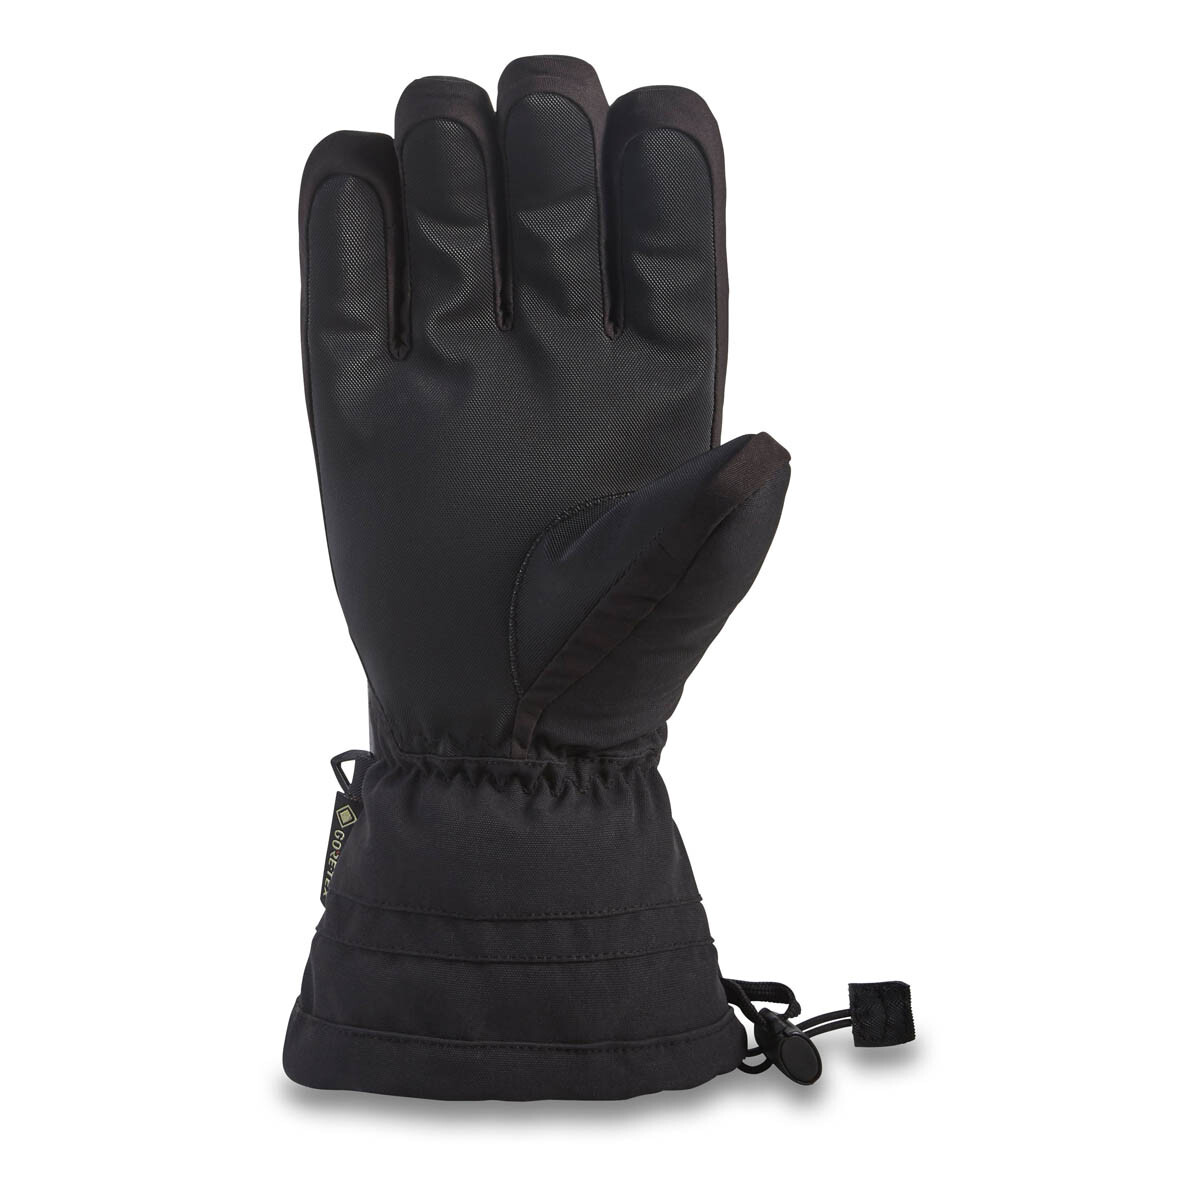 Dakine Omni Gore-tex handschoenen zwart